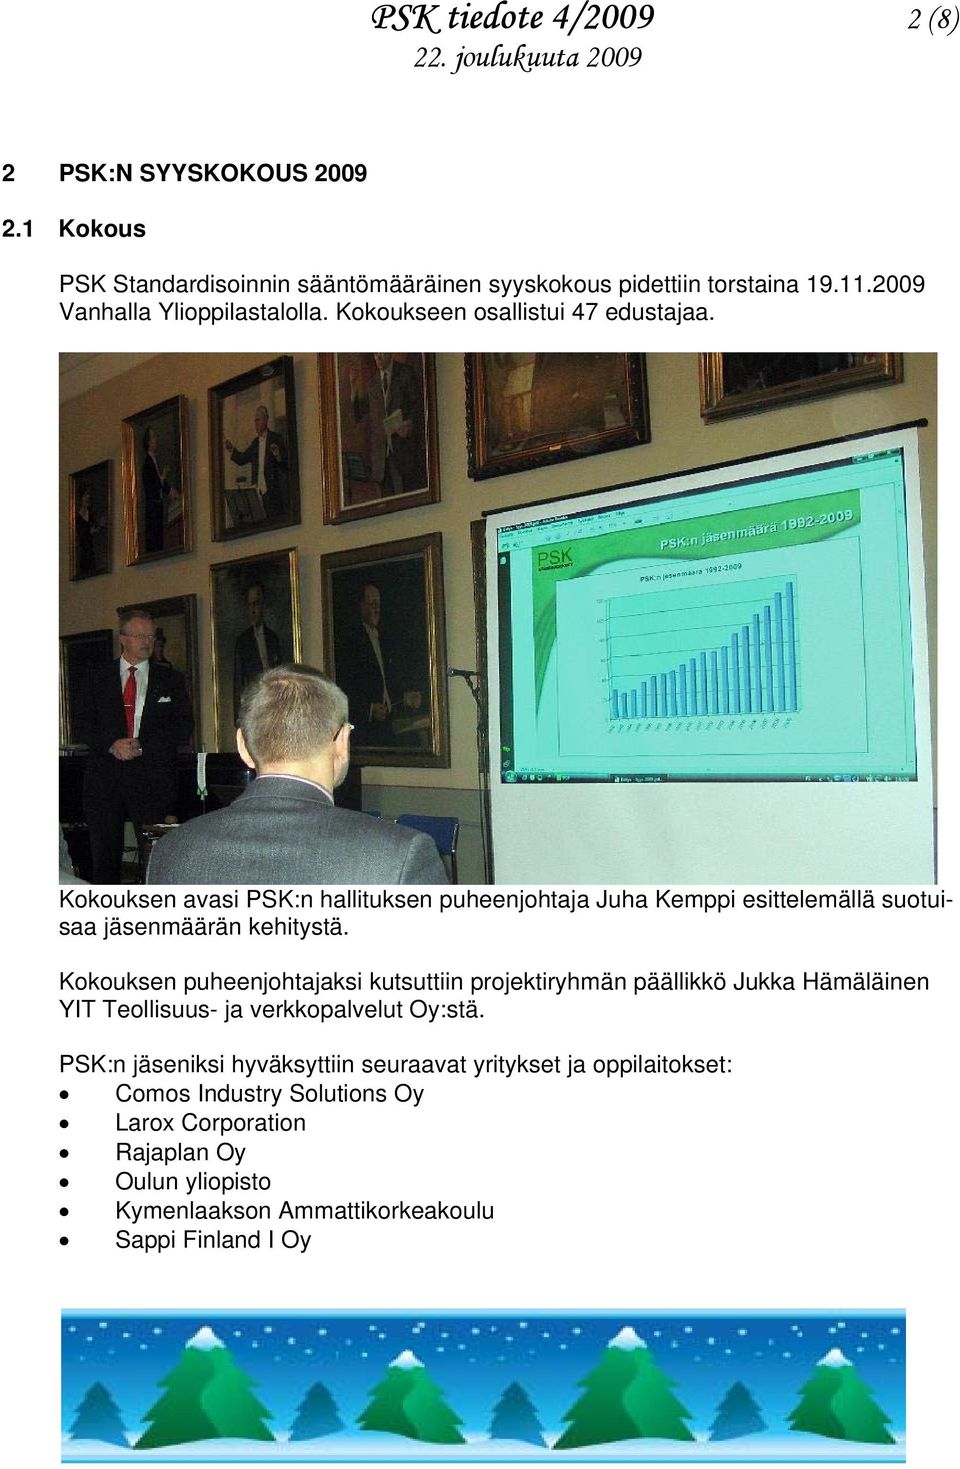 Kokouksen avasi PSK:n hallituksen puheenjohtaja Juha Kemppi esittelemällä suotuisaa jäsenmäärän kehitystä.